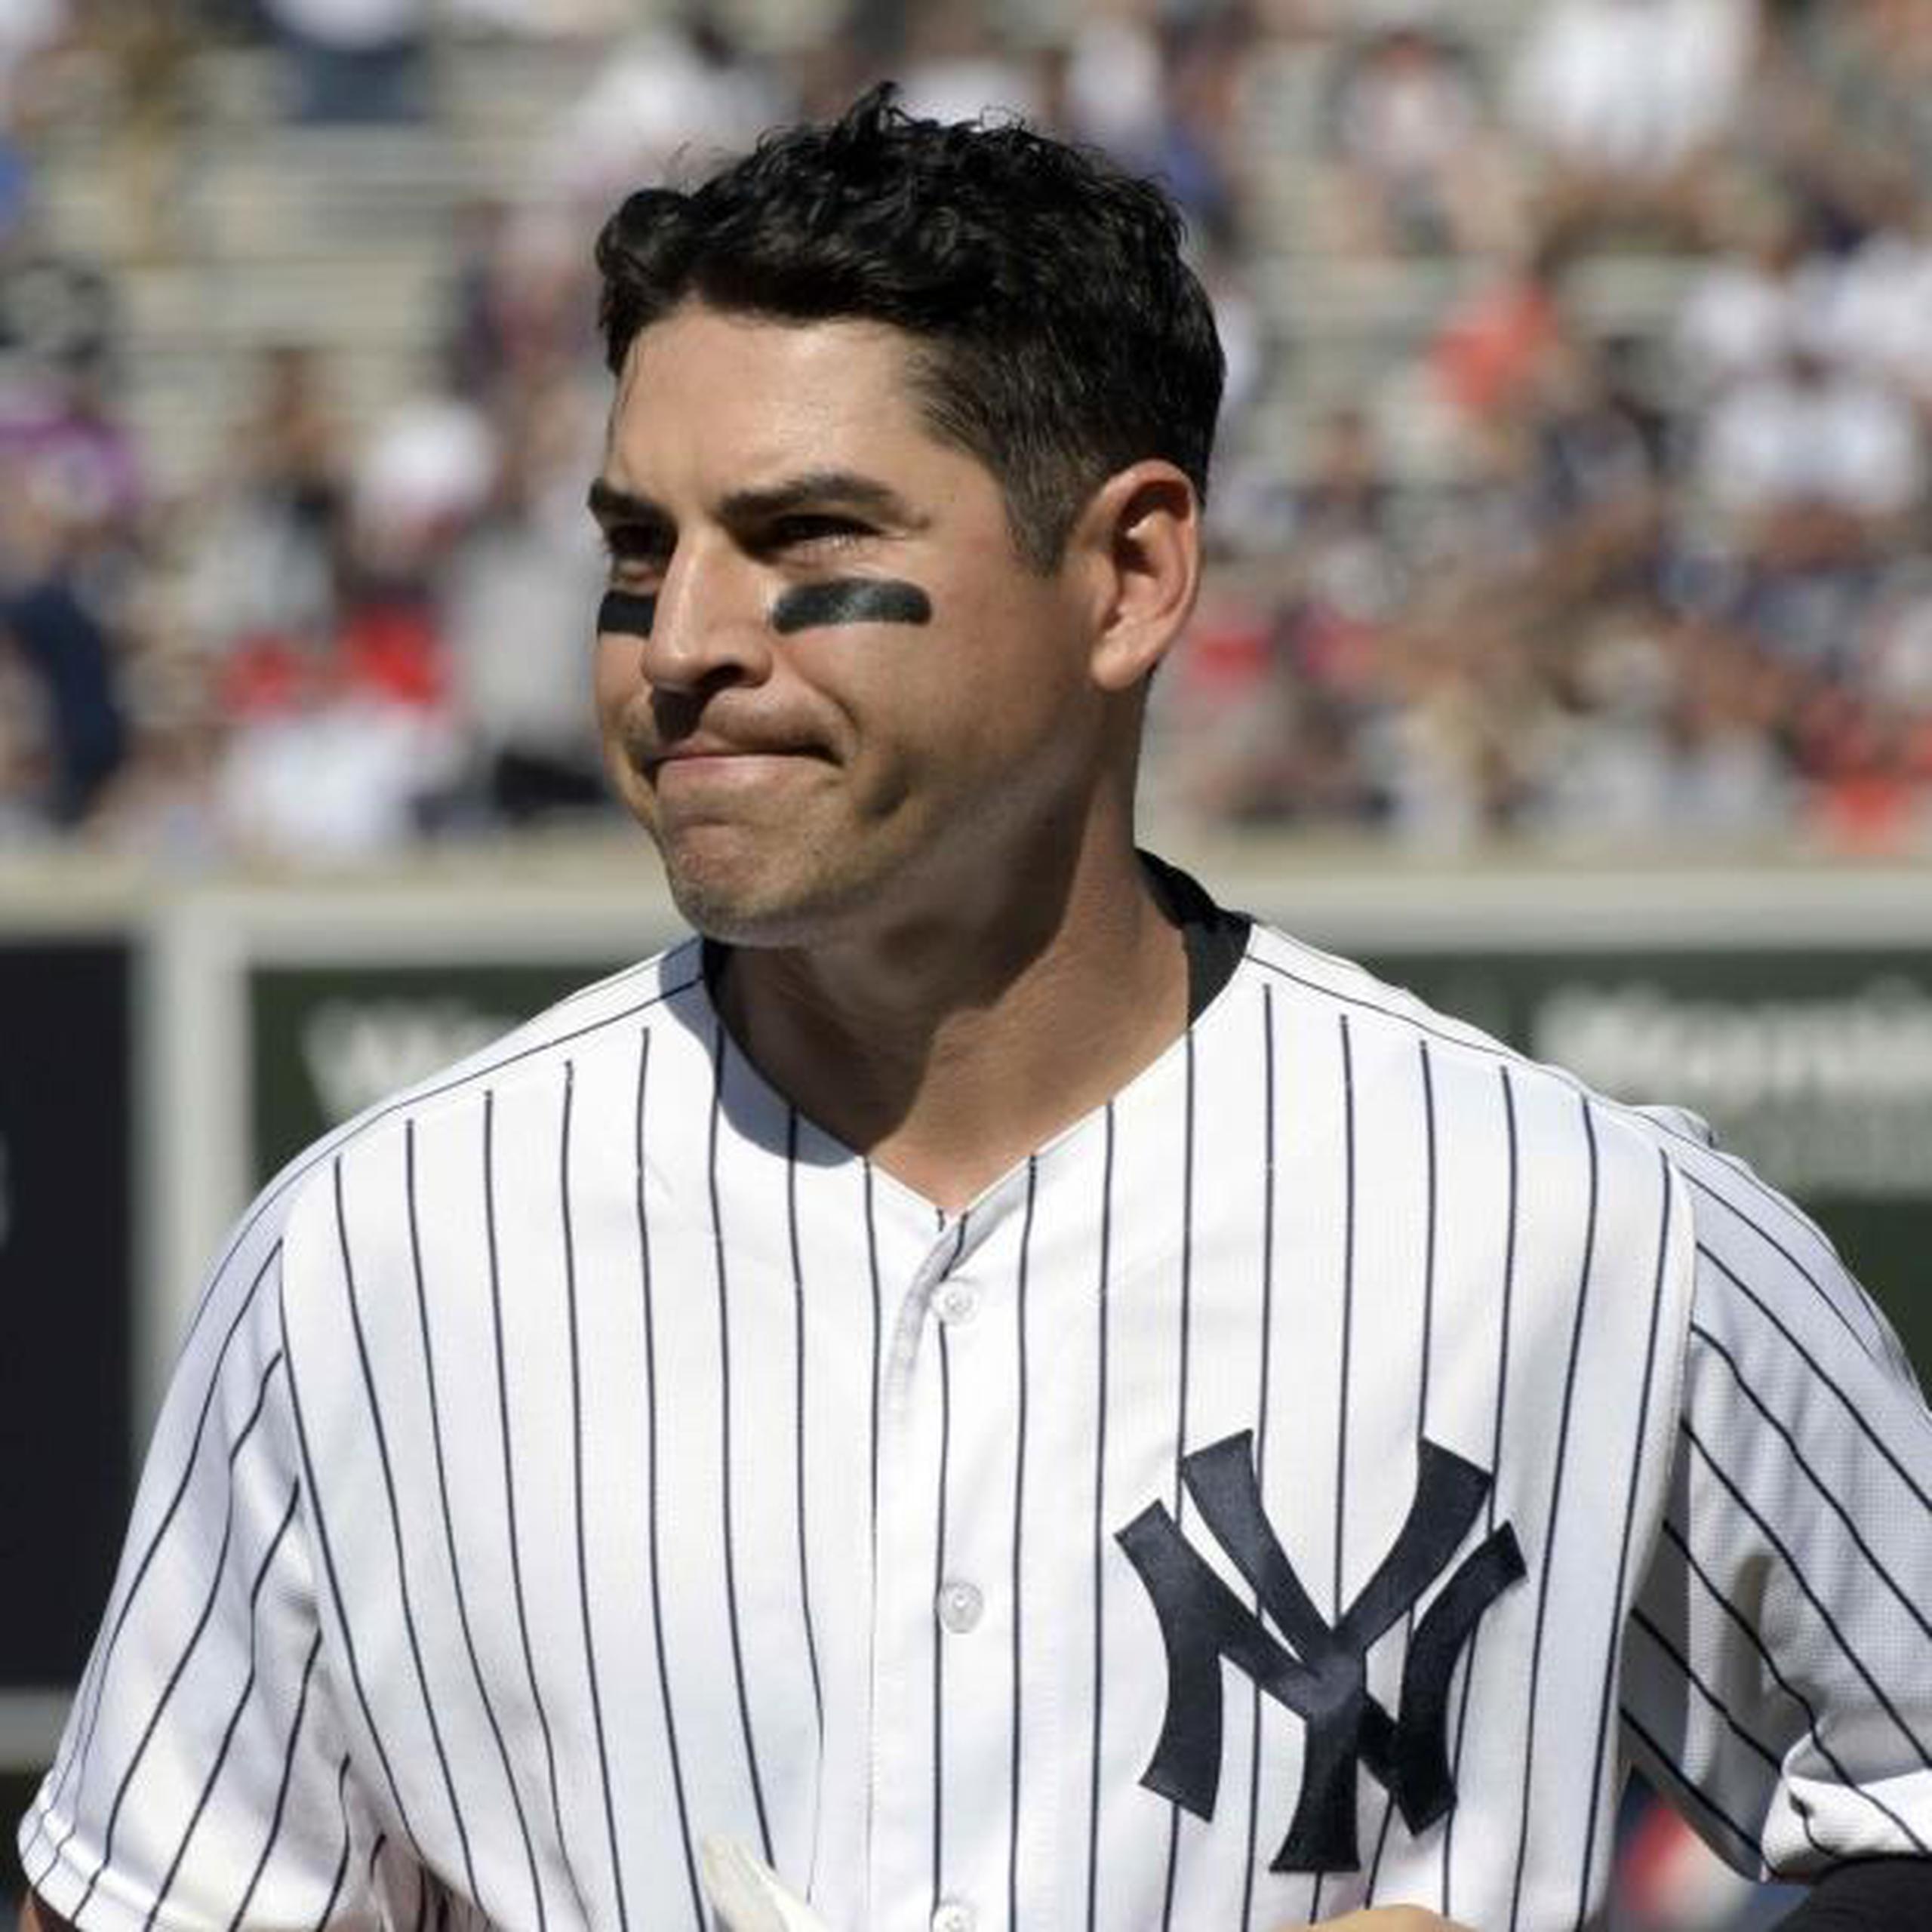 El jardinero Jacoby Ellsbury, frecuentemente lesionado, no juega para los Yankees desde 2017. (Archivo / AP)